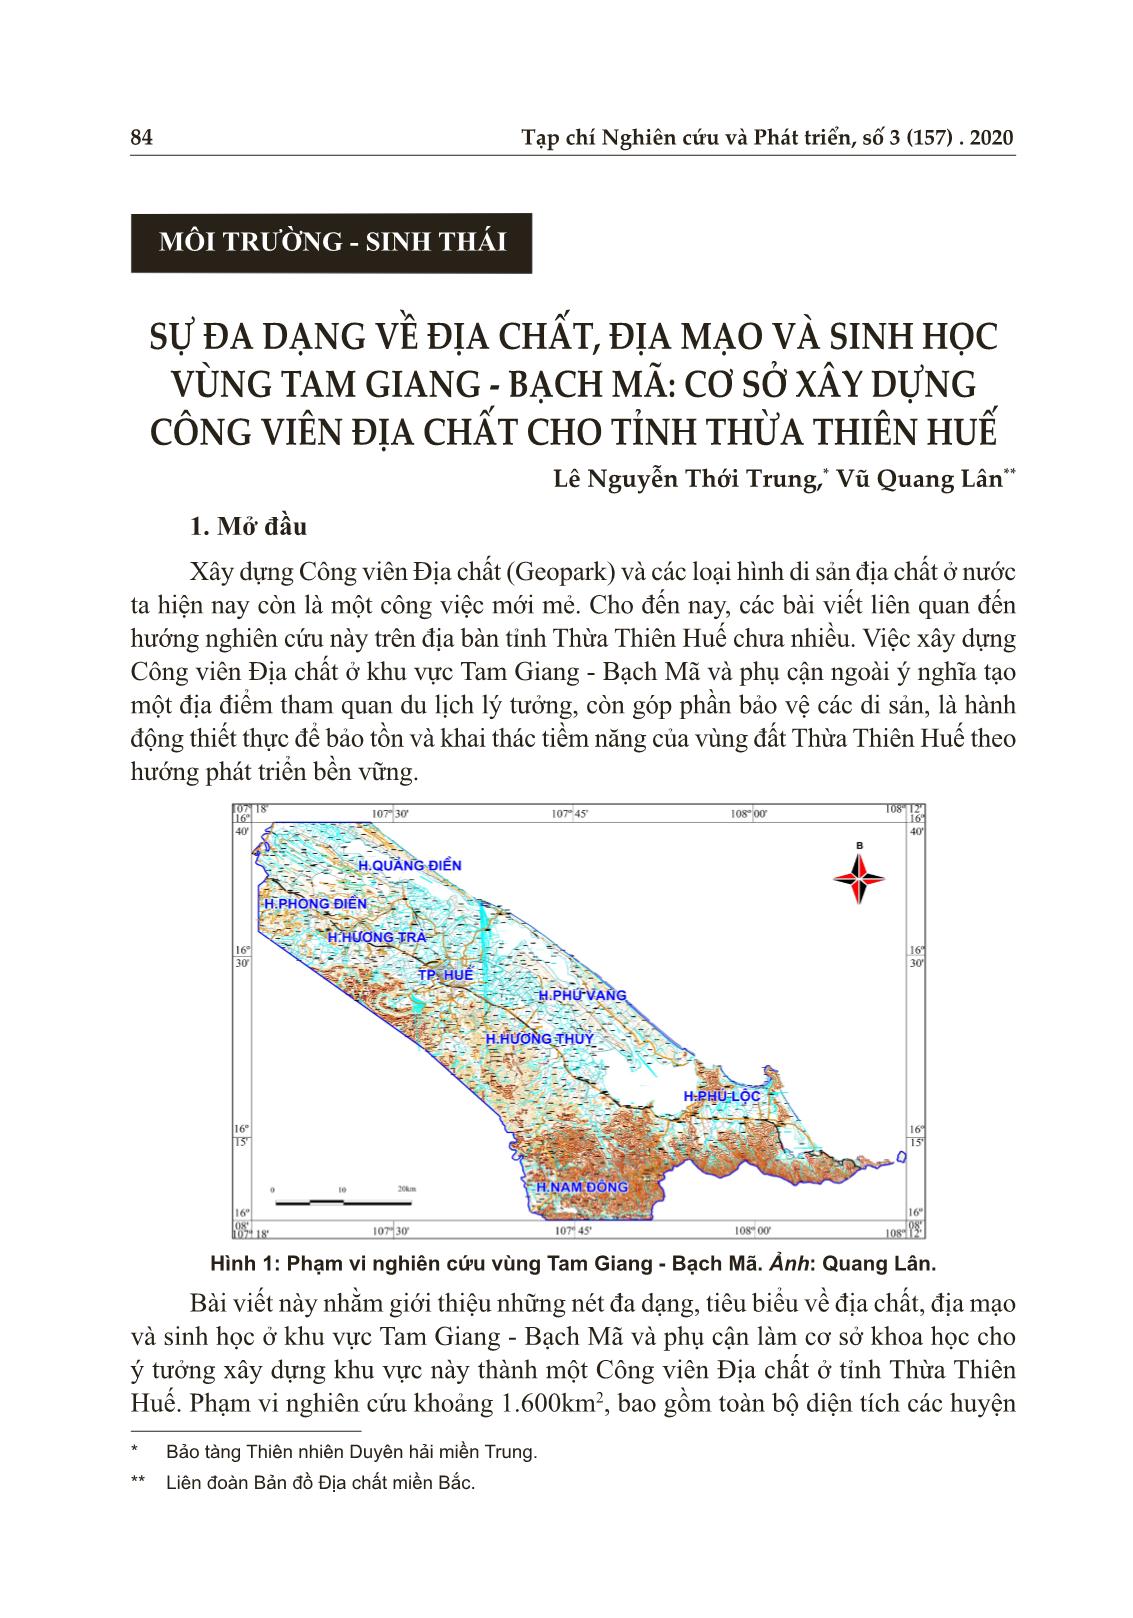 Sự đa dạng về địa chất, địa mạo và sinh học vùng Tam Giang - Bạch mã: cơ sở xây dựng công viên địa chất cho tỉnh Thừa Thiên Huế trang 1